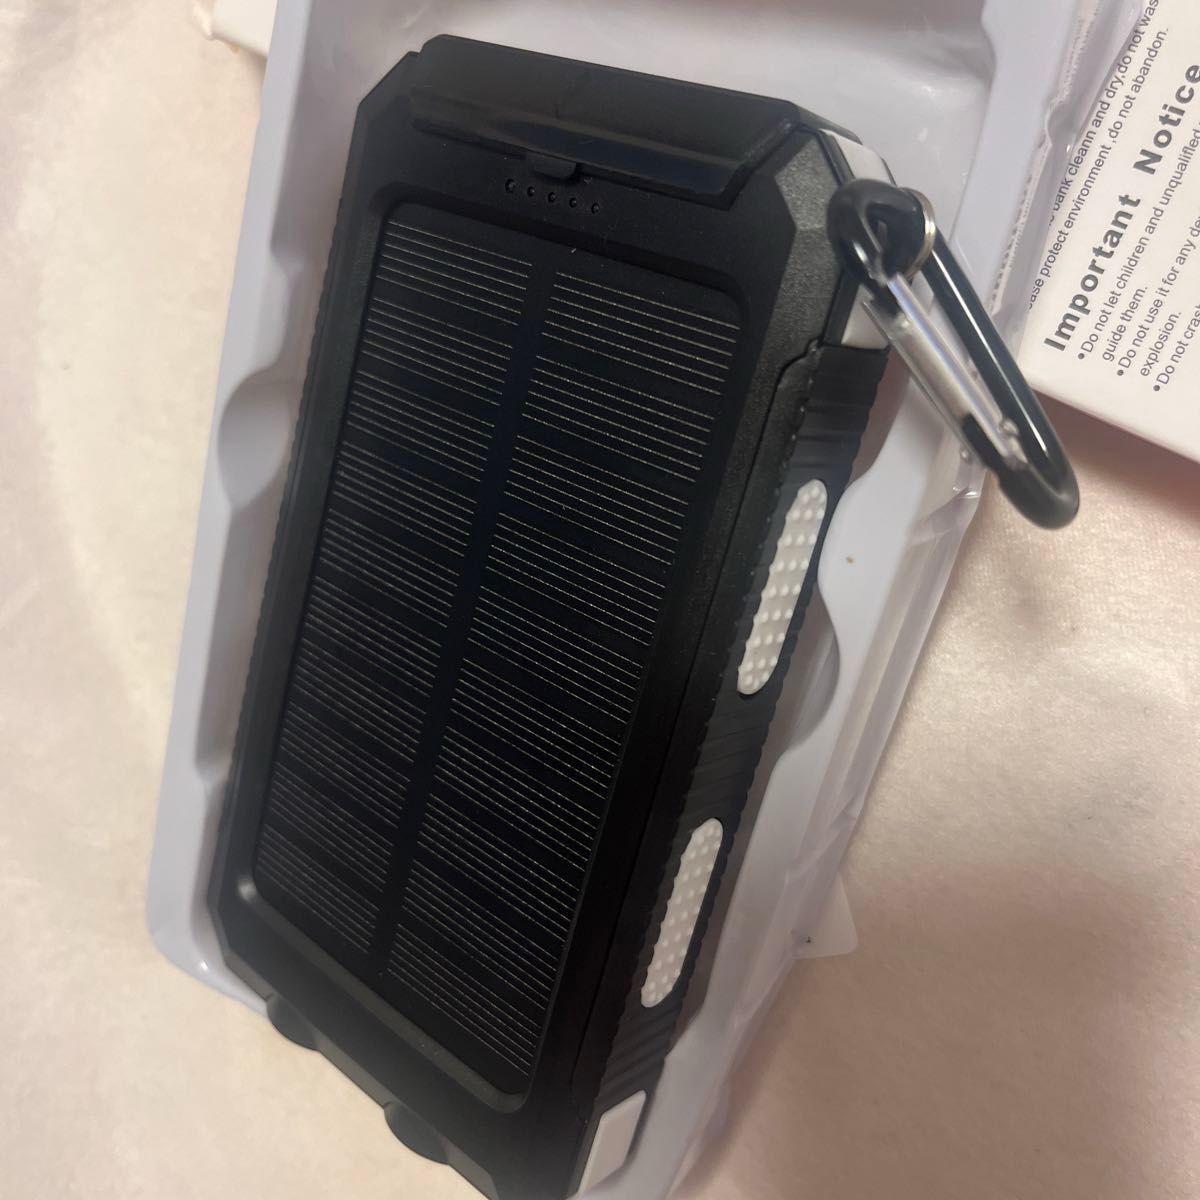 モバイルバッテリー 大容量 ライト付き ソーラー充電器 キャンプ 災害時 太陽光 キャンプ USB LEDライト